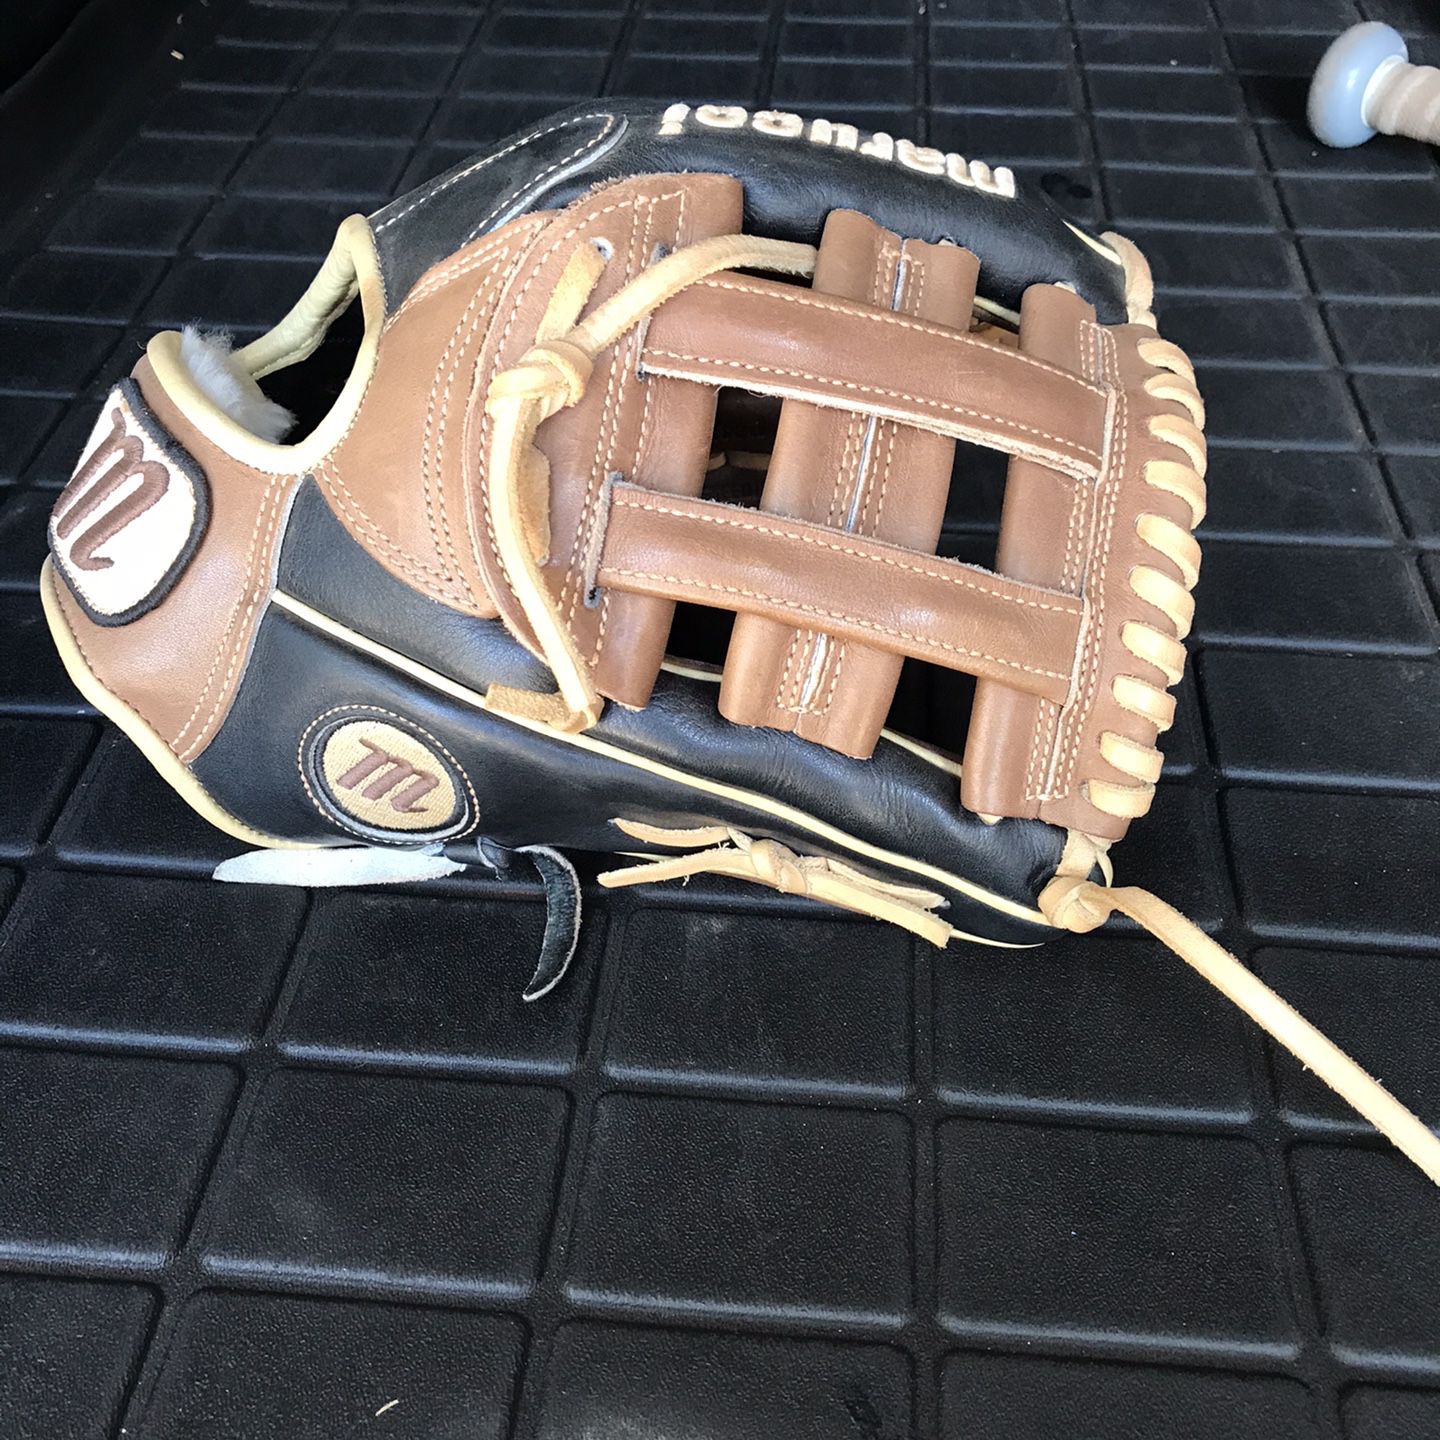 Marucci 11.5 Baseball Glove